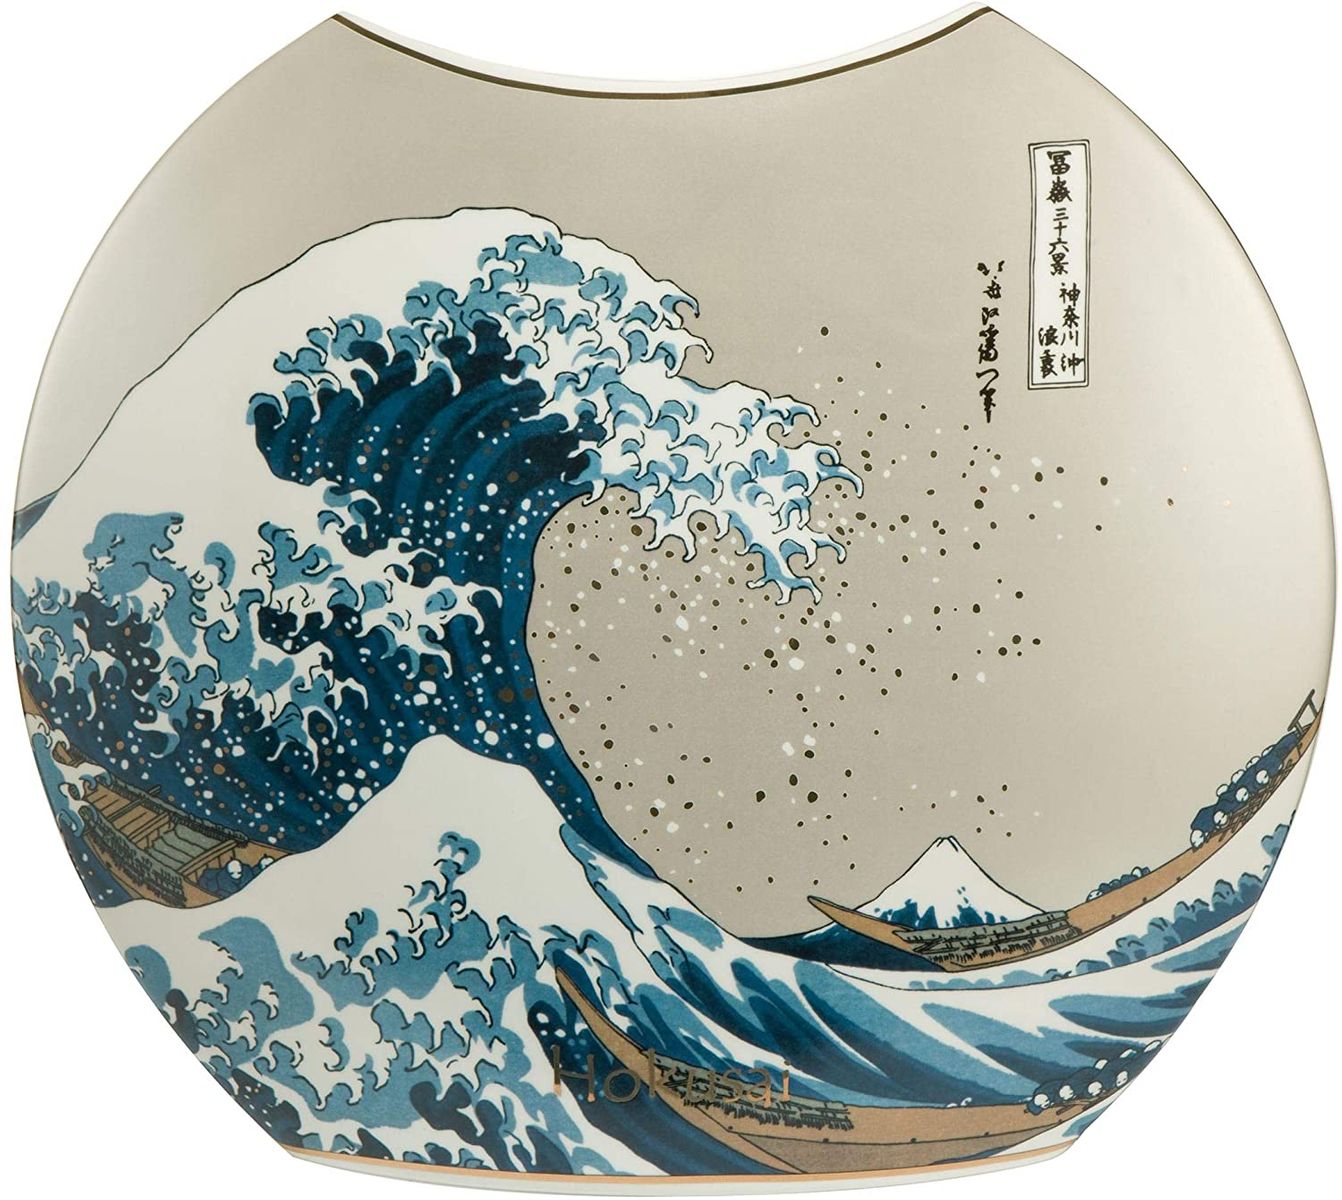 Goebel Home Decor Hokusai Large Porcelain Vase Large Wave Off Kanagawa (1829-1832) 13.77 L x 3.93 W x 11.81 H inches